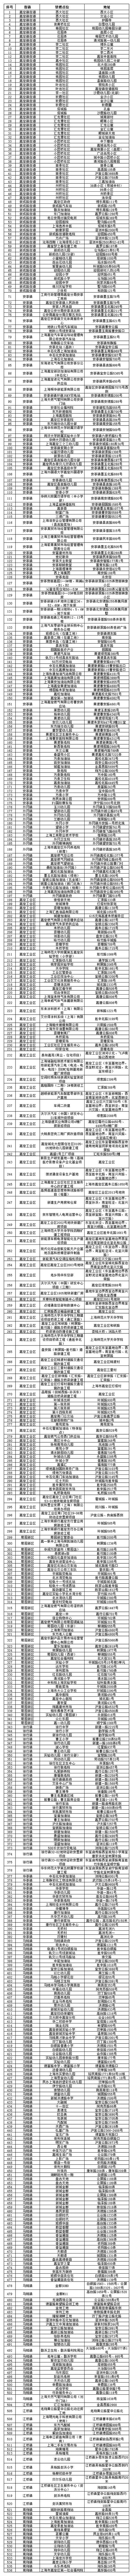 2023上海嘉定烟花爆竹销售点+燃放点+禁放点